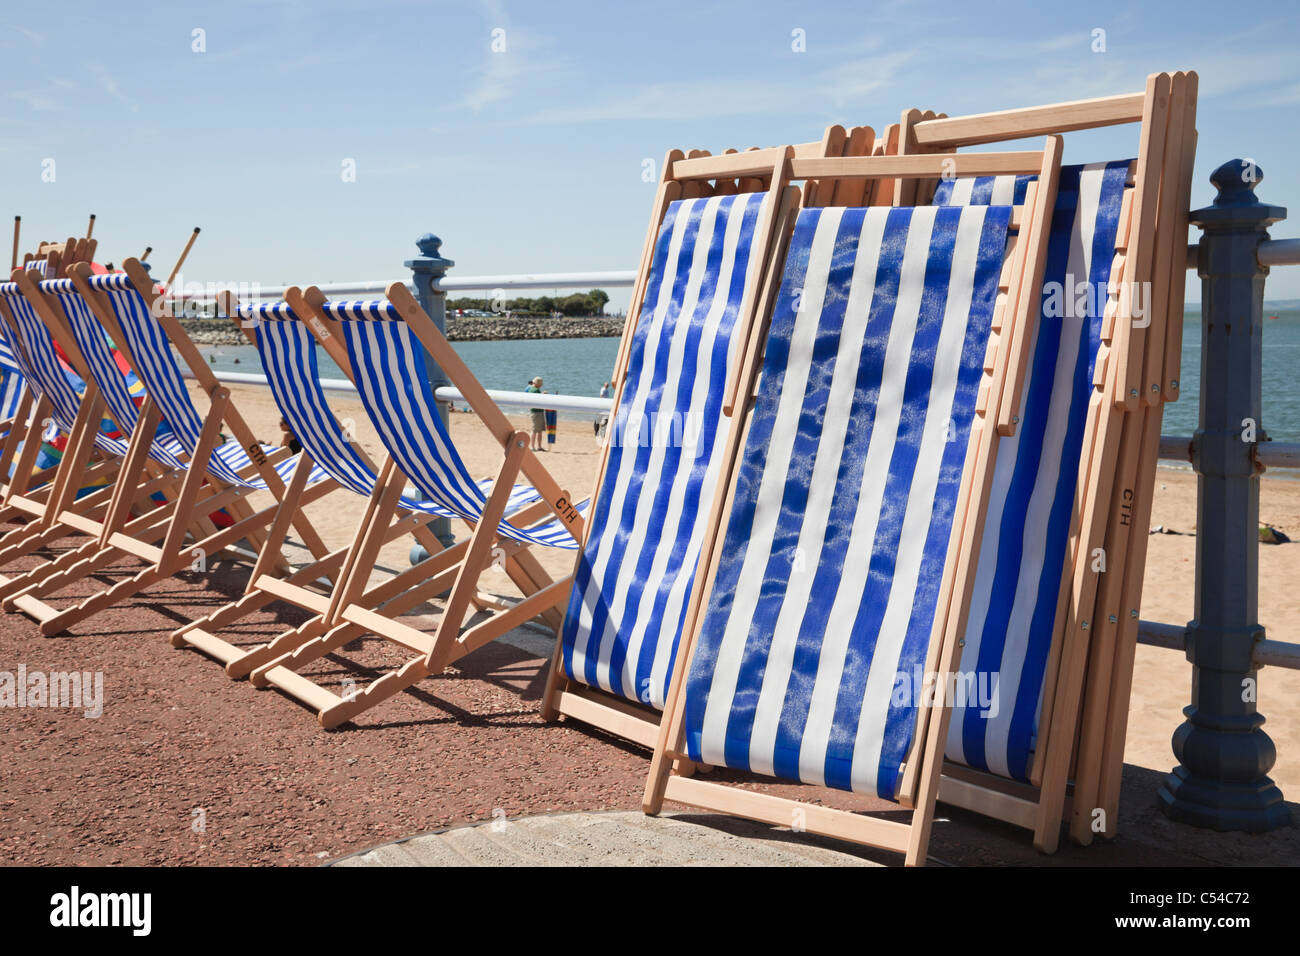 Blau-weiß gestreifte Liegestühle können im Hochsommer an einer Strandpromenade am Strand gemietet werden. Morecambe, Lancashire, England, Großbritannien. Stockfoto